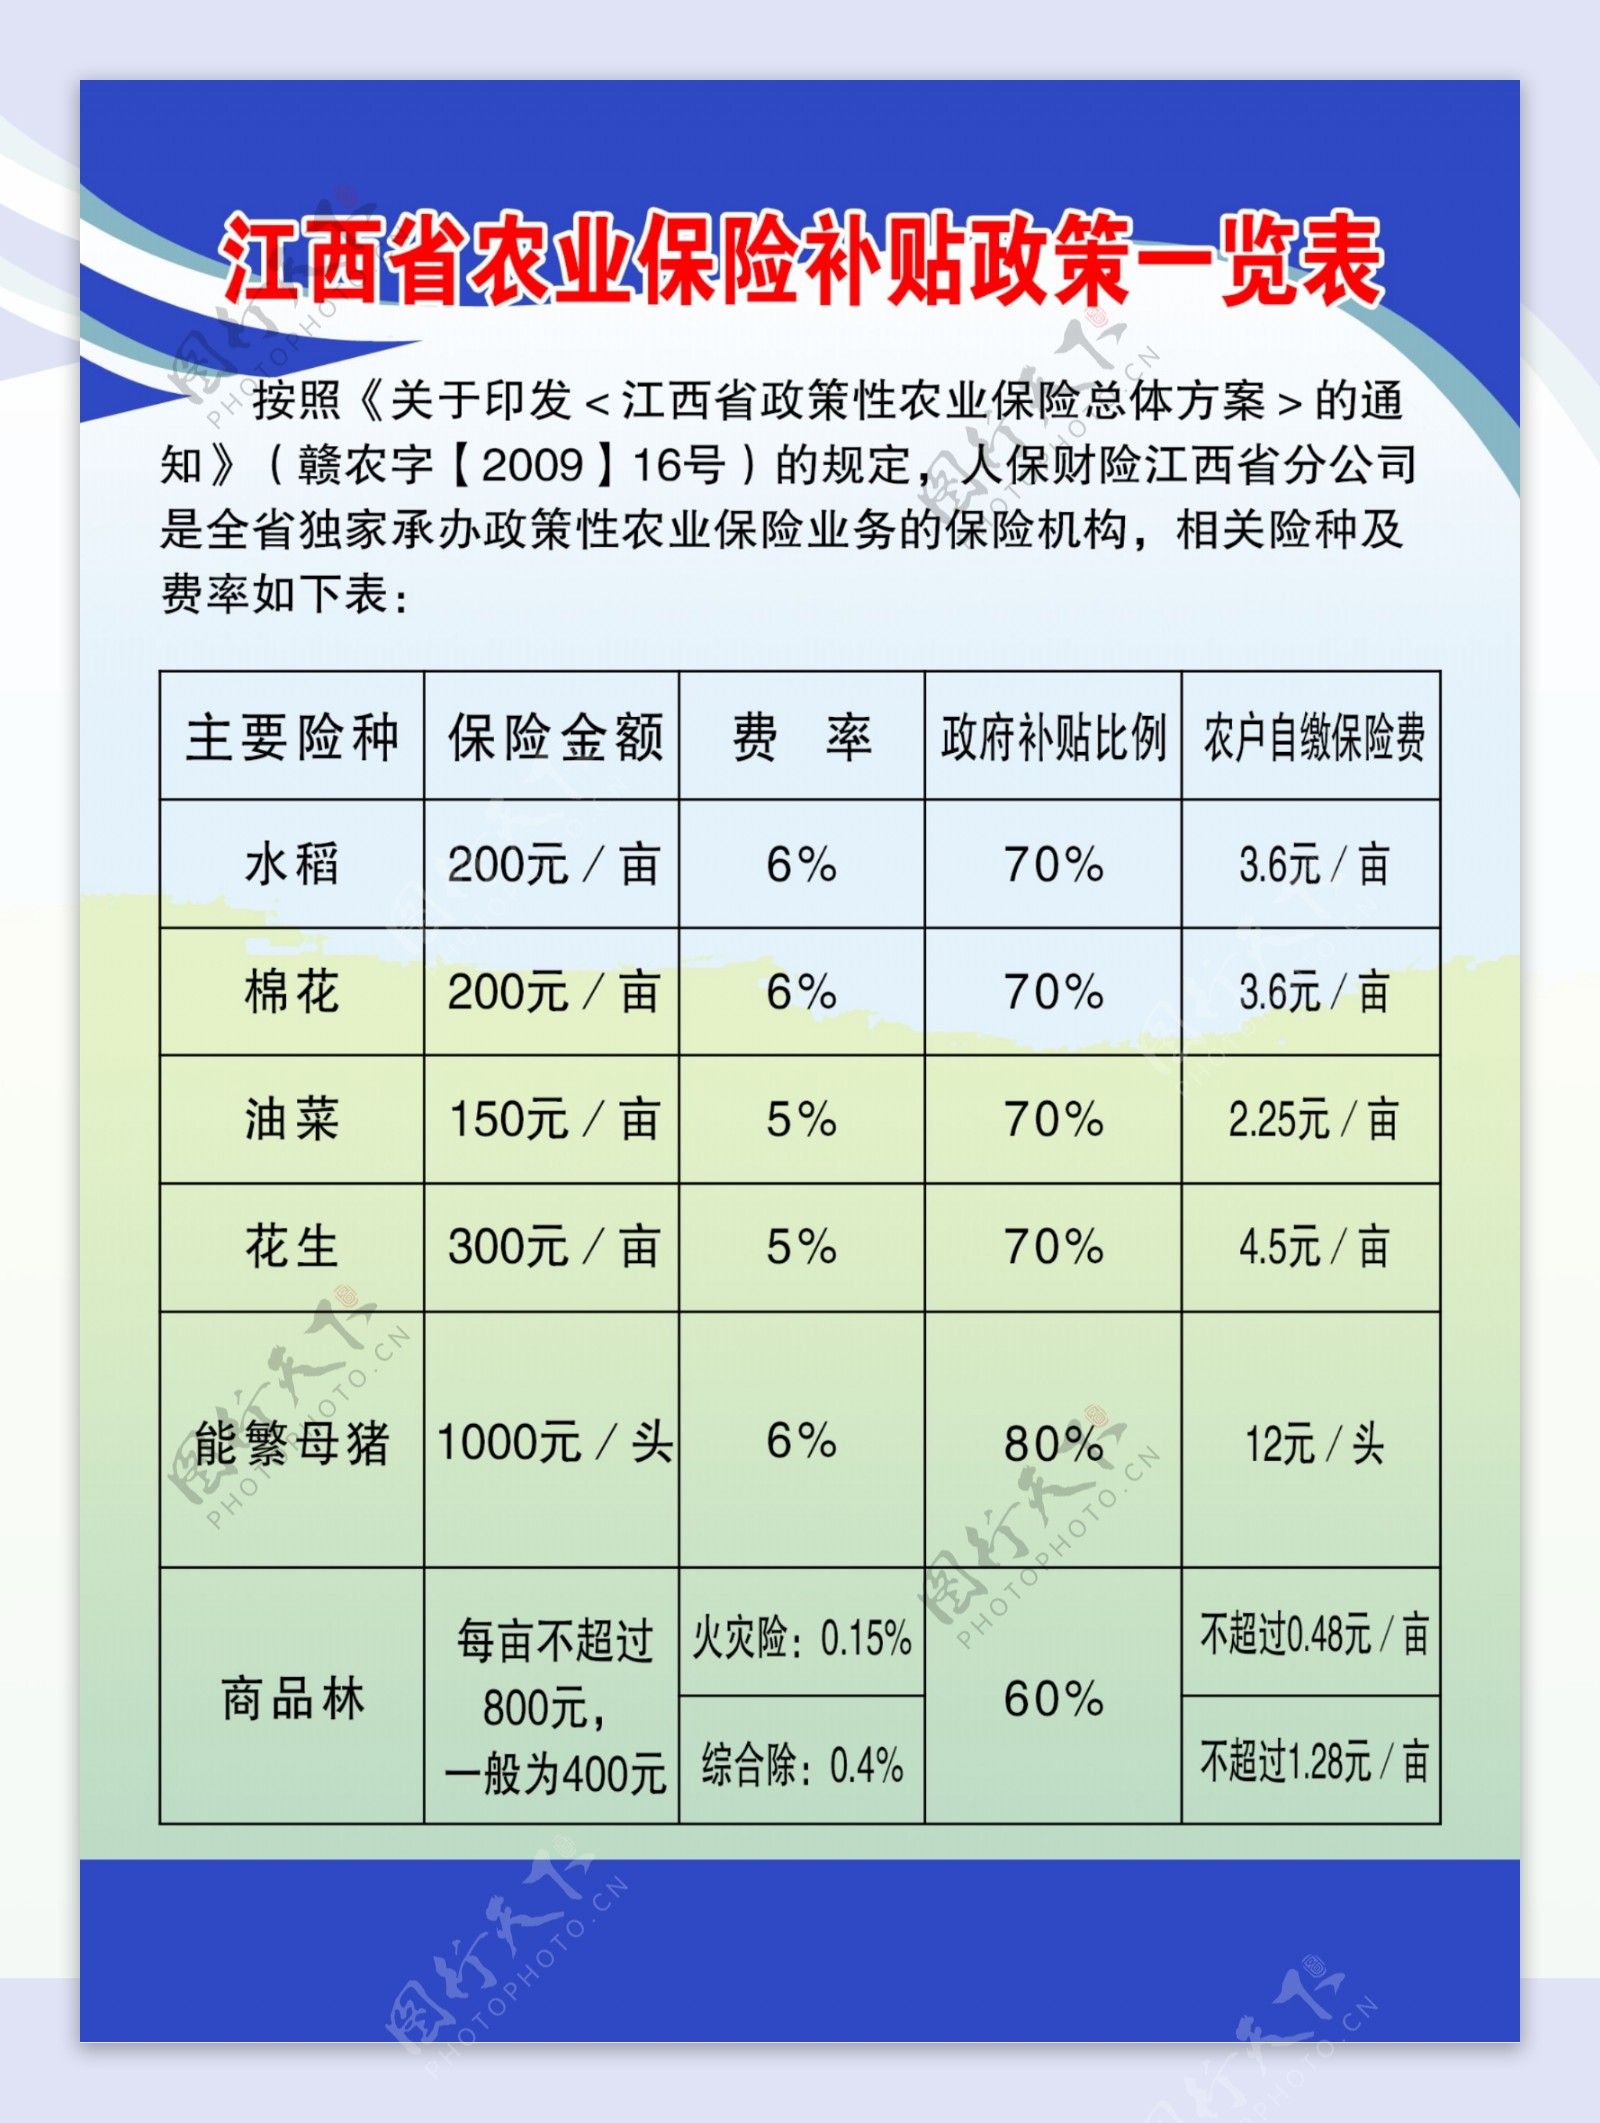 江西省农业保险补贴政策一览表